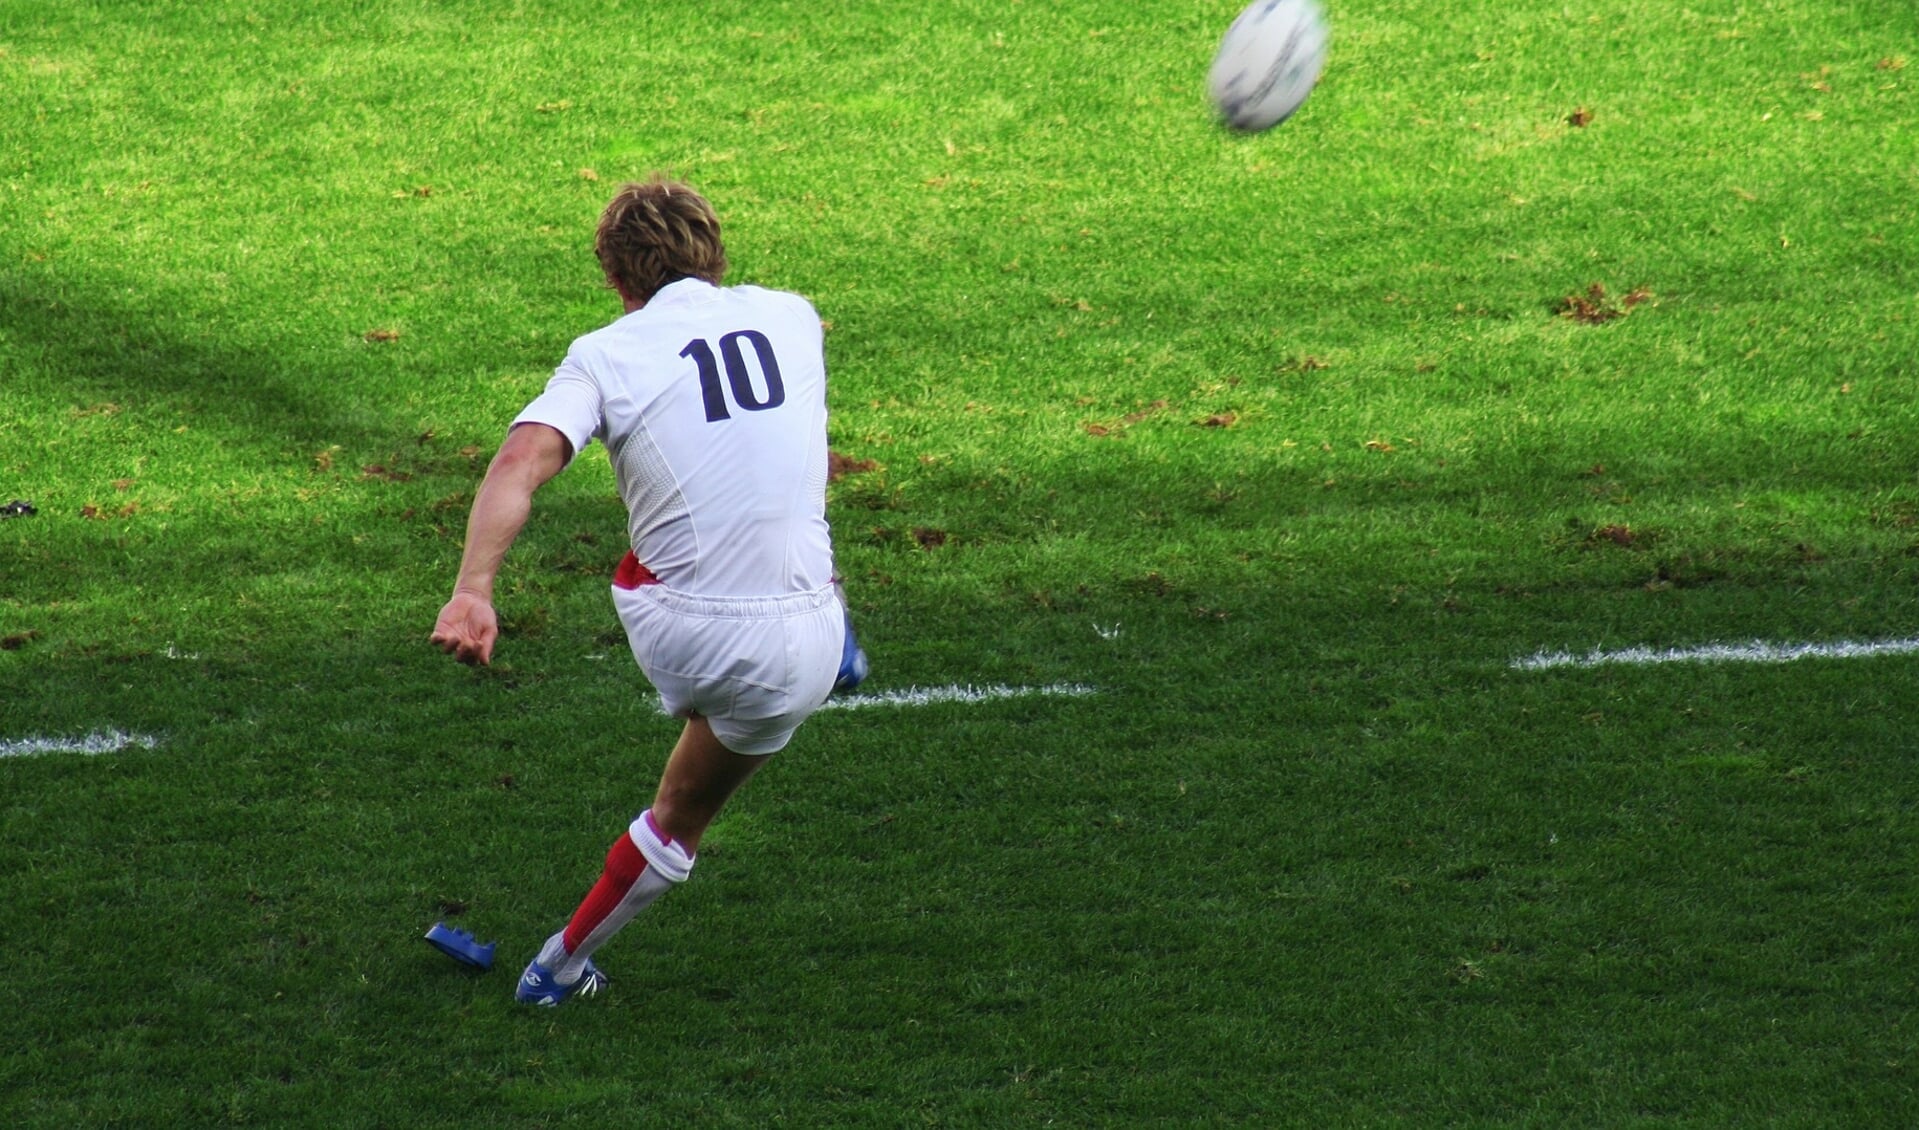 Rugby is in Haarlemmermeer als basissport aangewezen. 